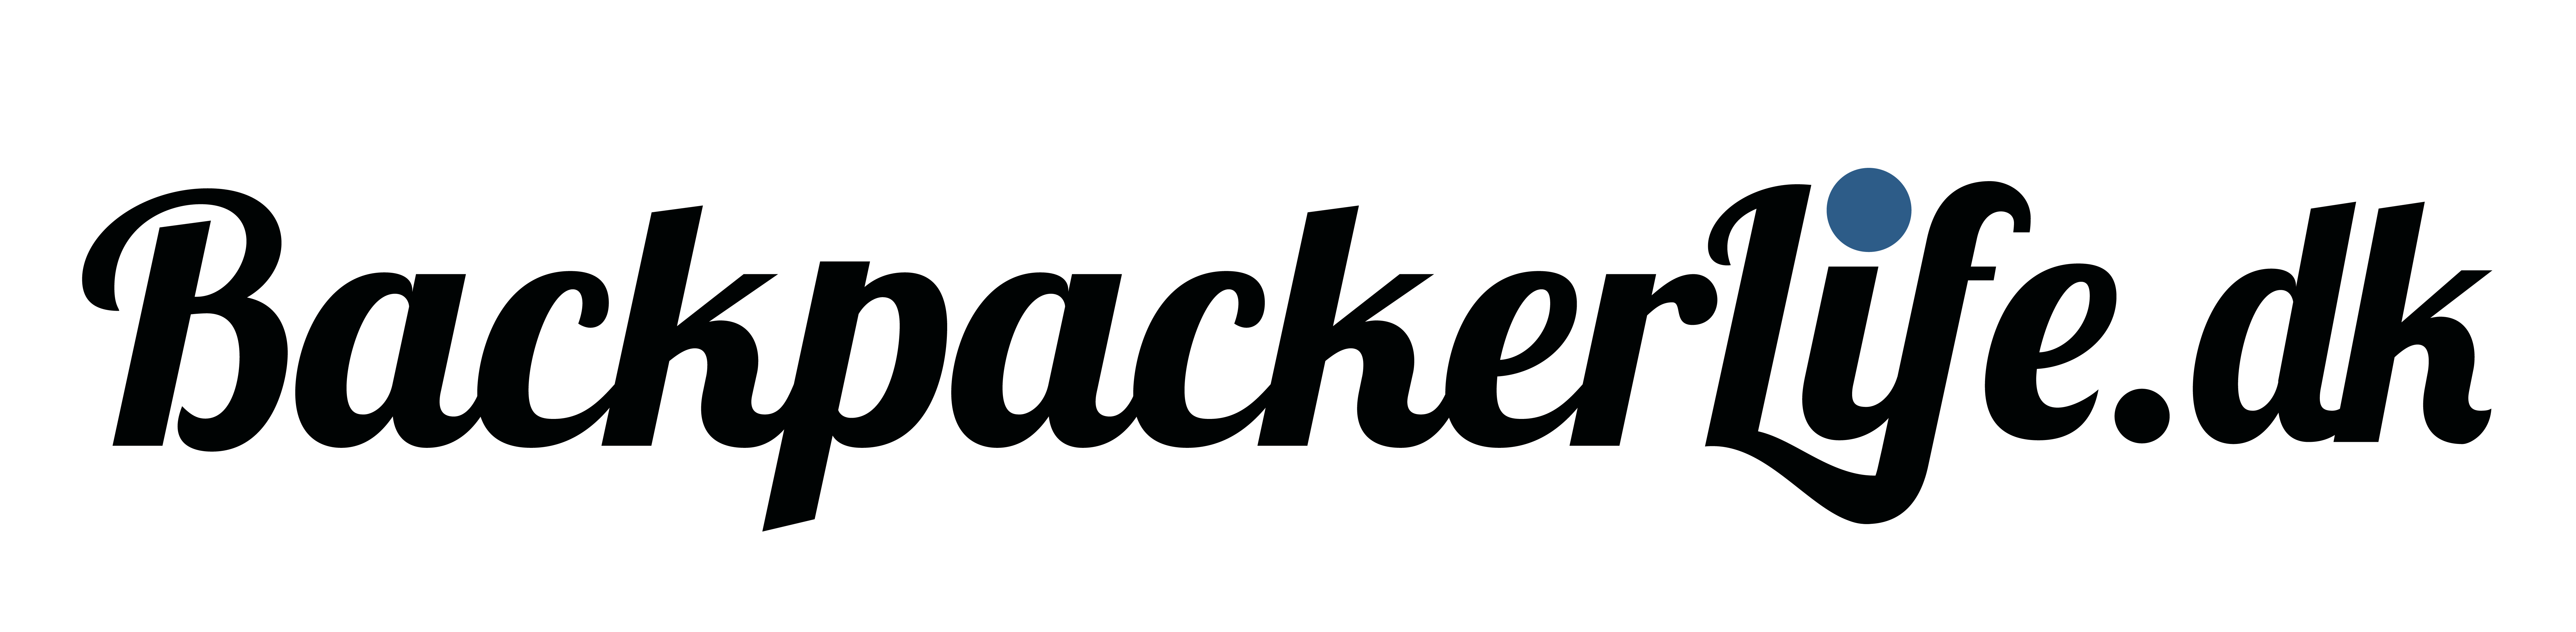 Backpackerlife logo